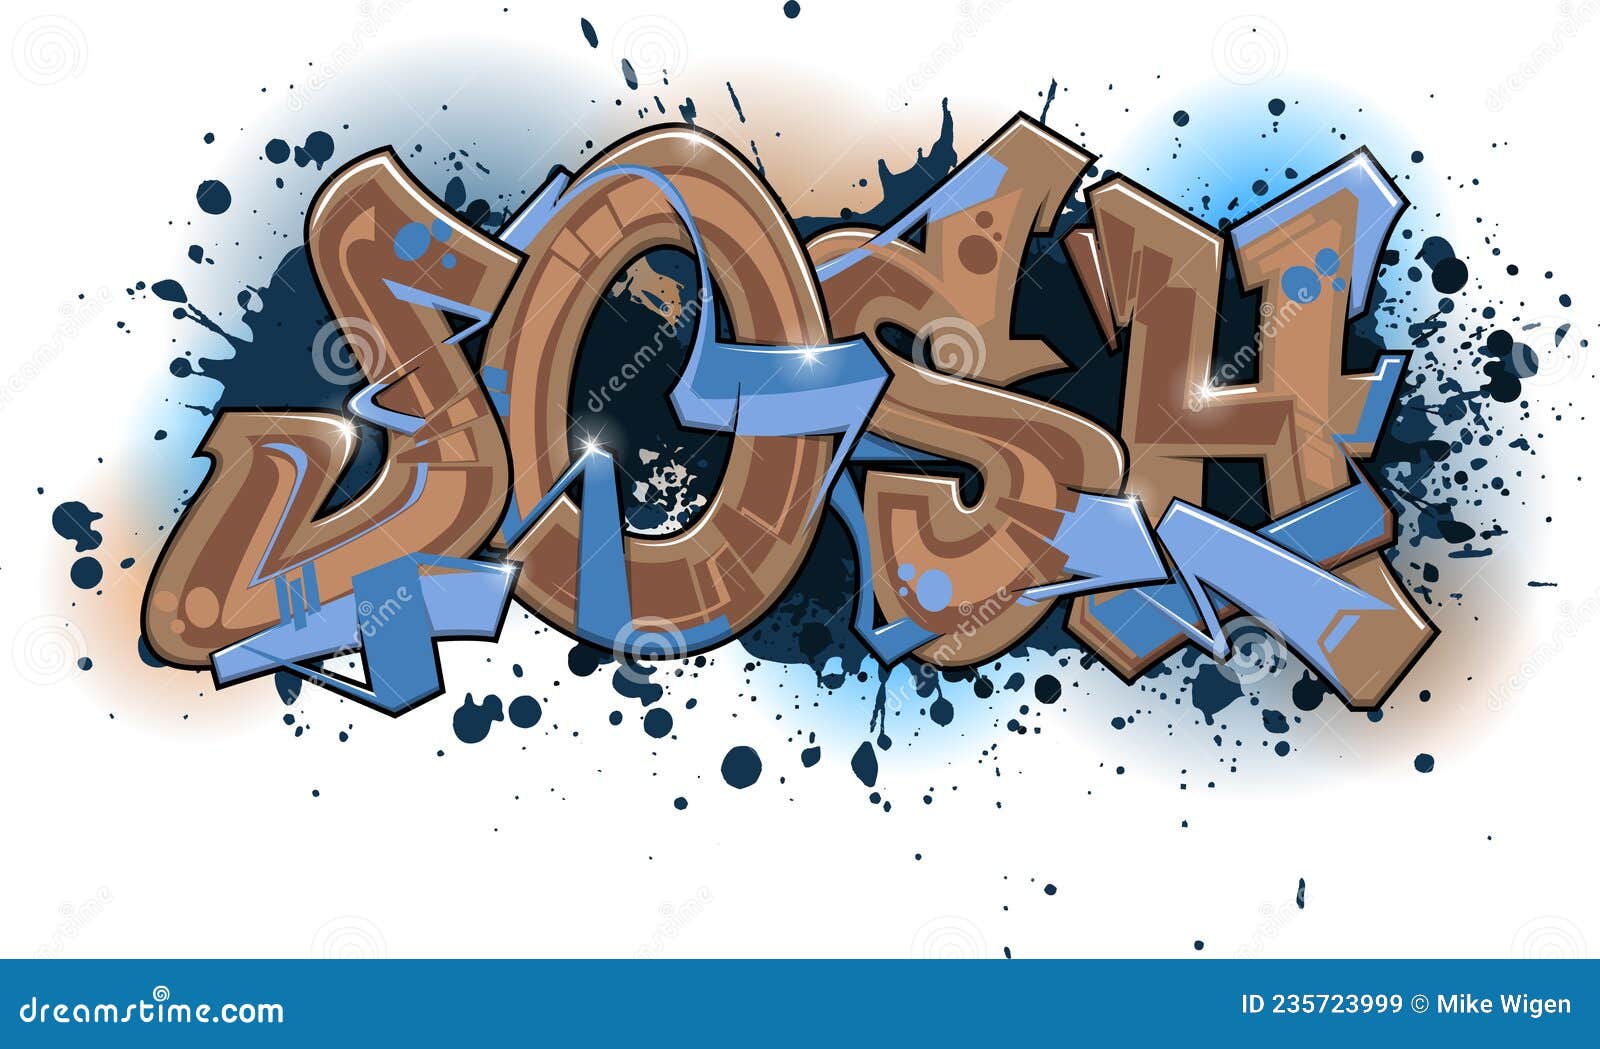 graffiti styled name  - josh